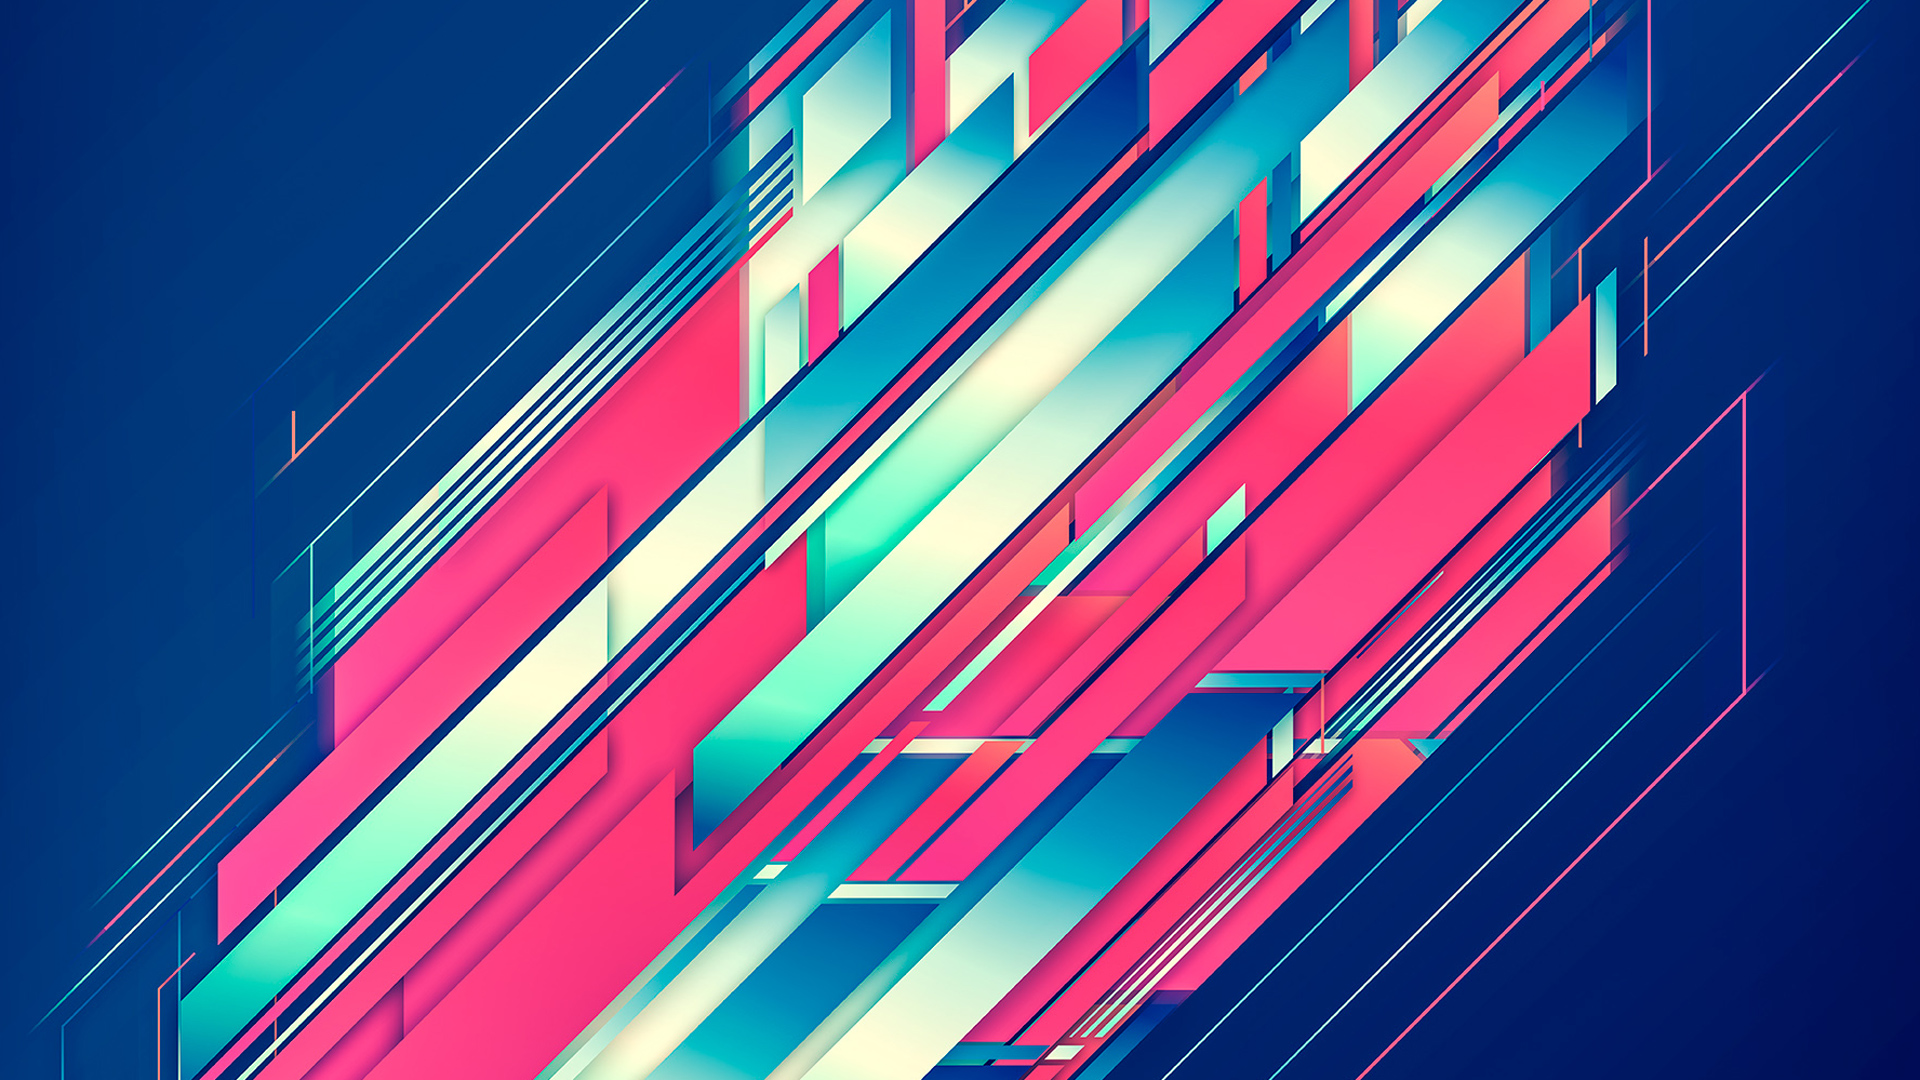 wallpaper abstrak hd,blue,line,red,light,pink